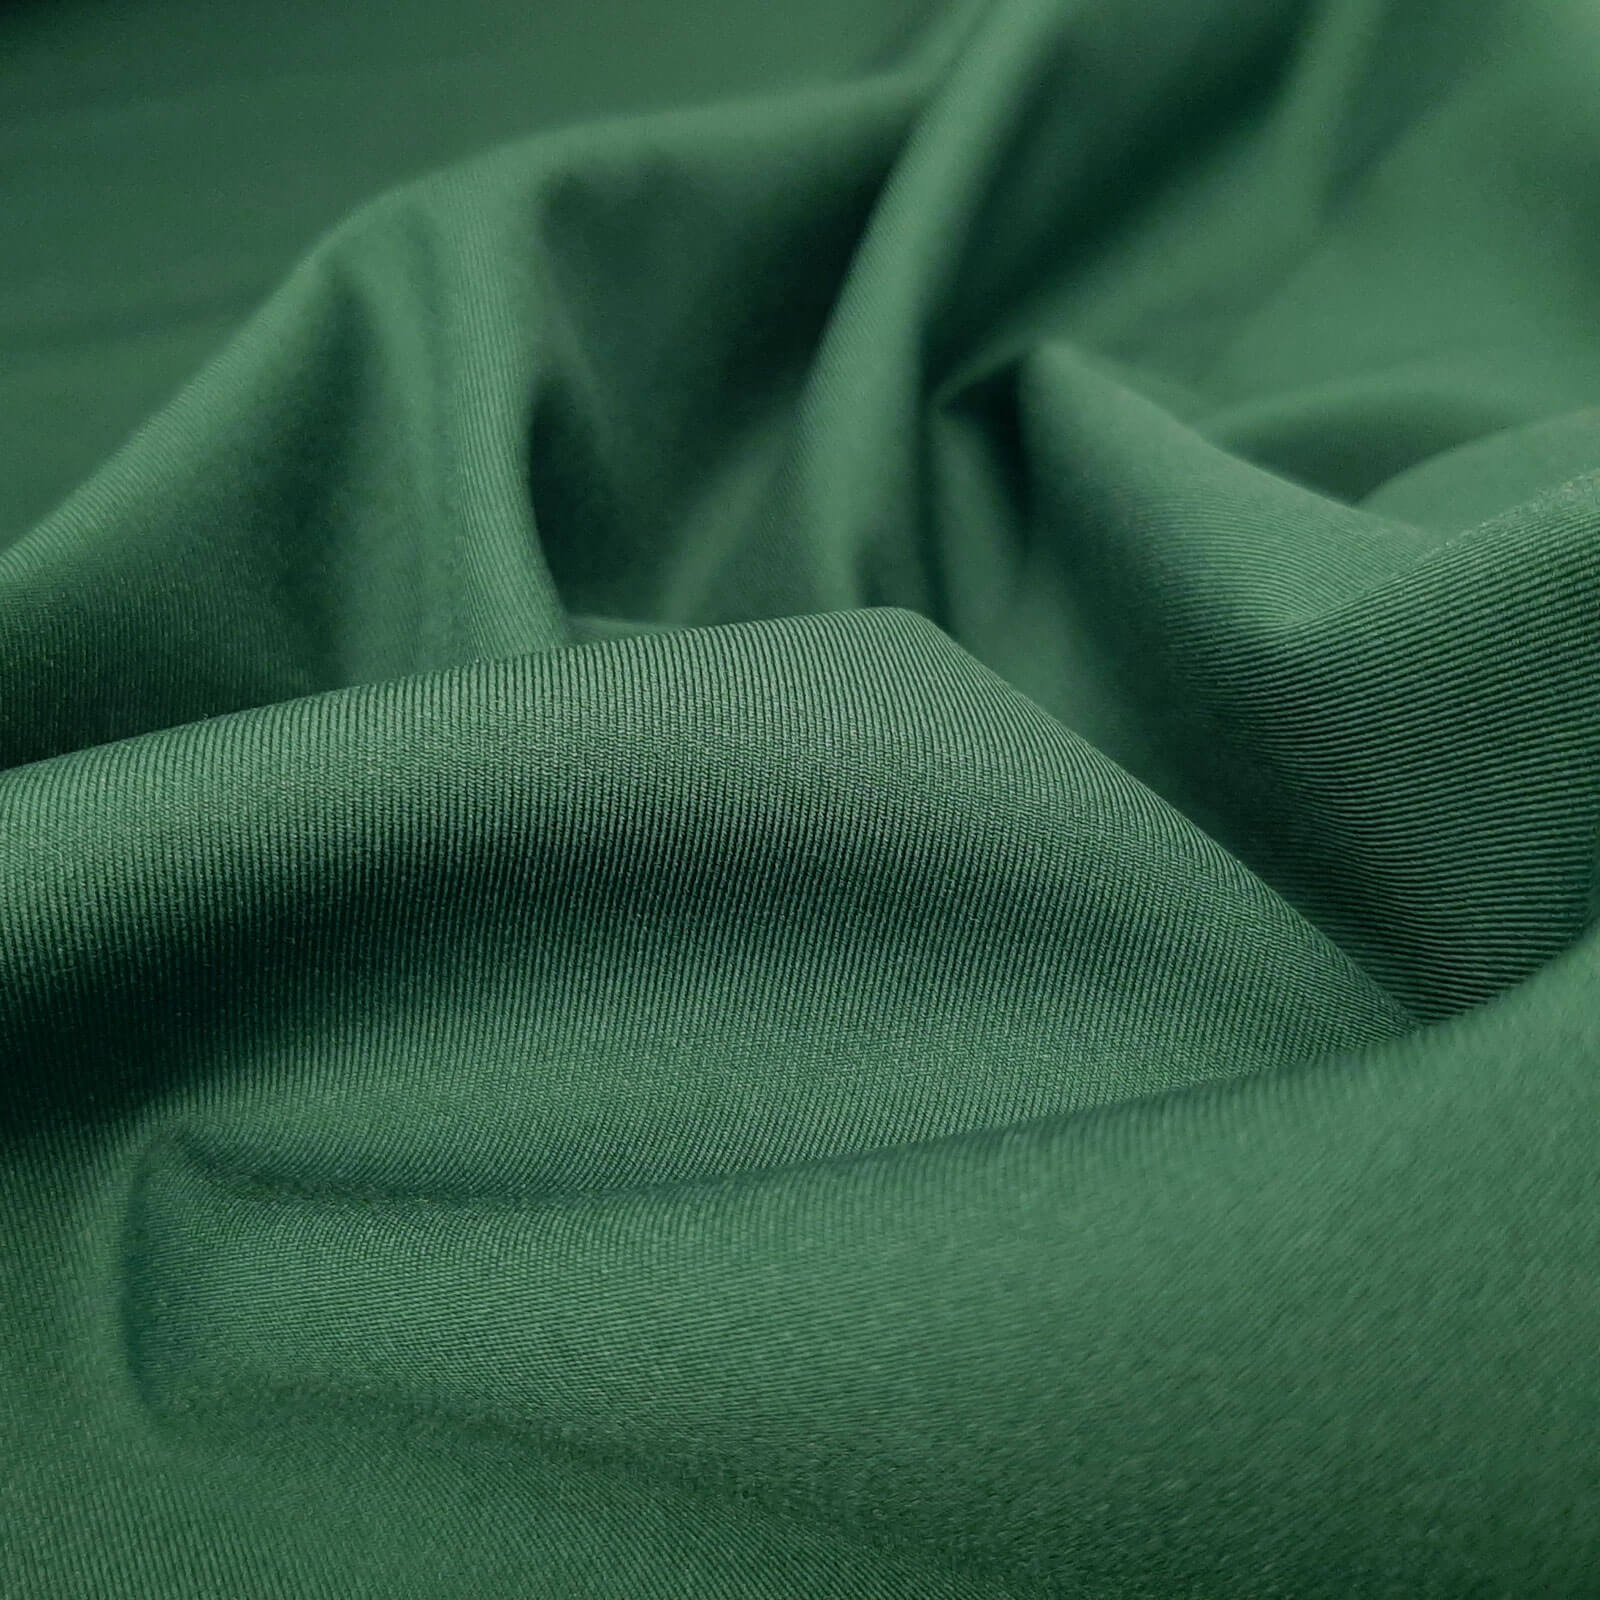 Hugi - Softshell Pontetorto de 3 capas - Estiramiento ligero - Verde oscuro